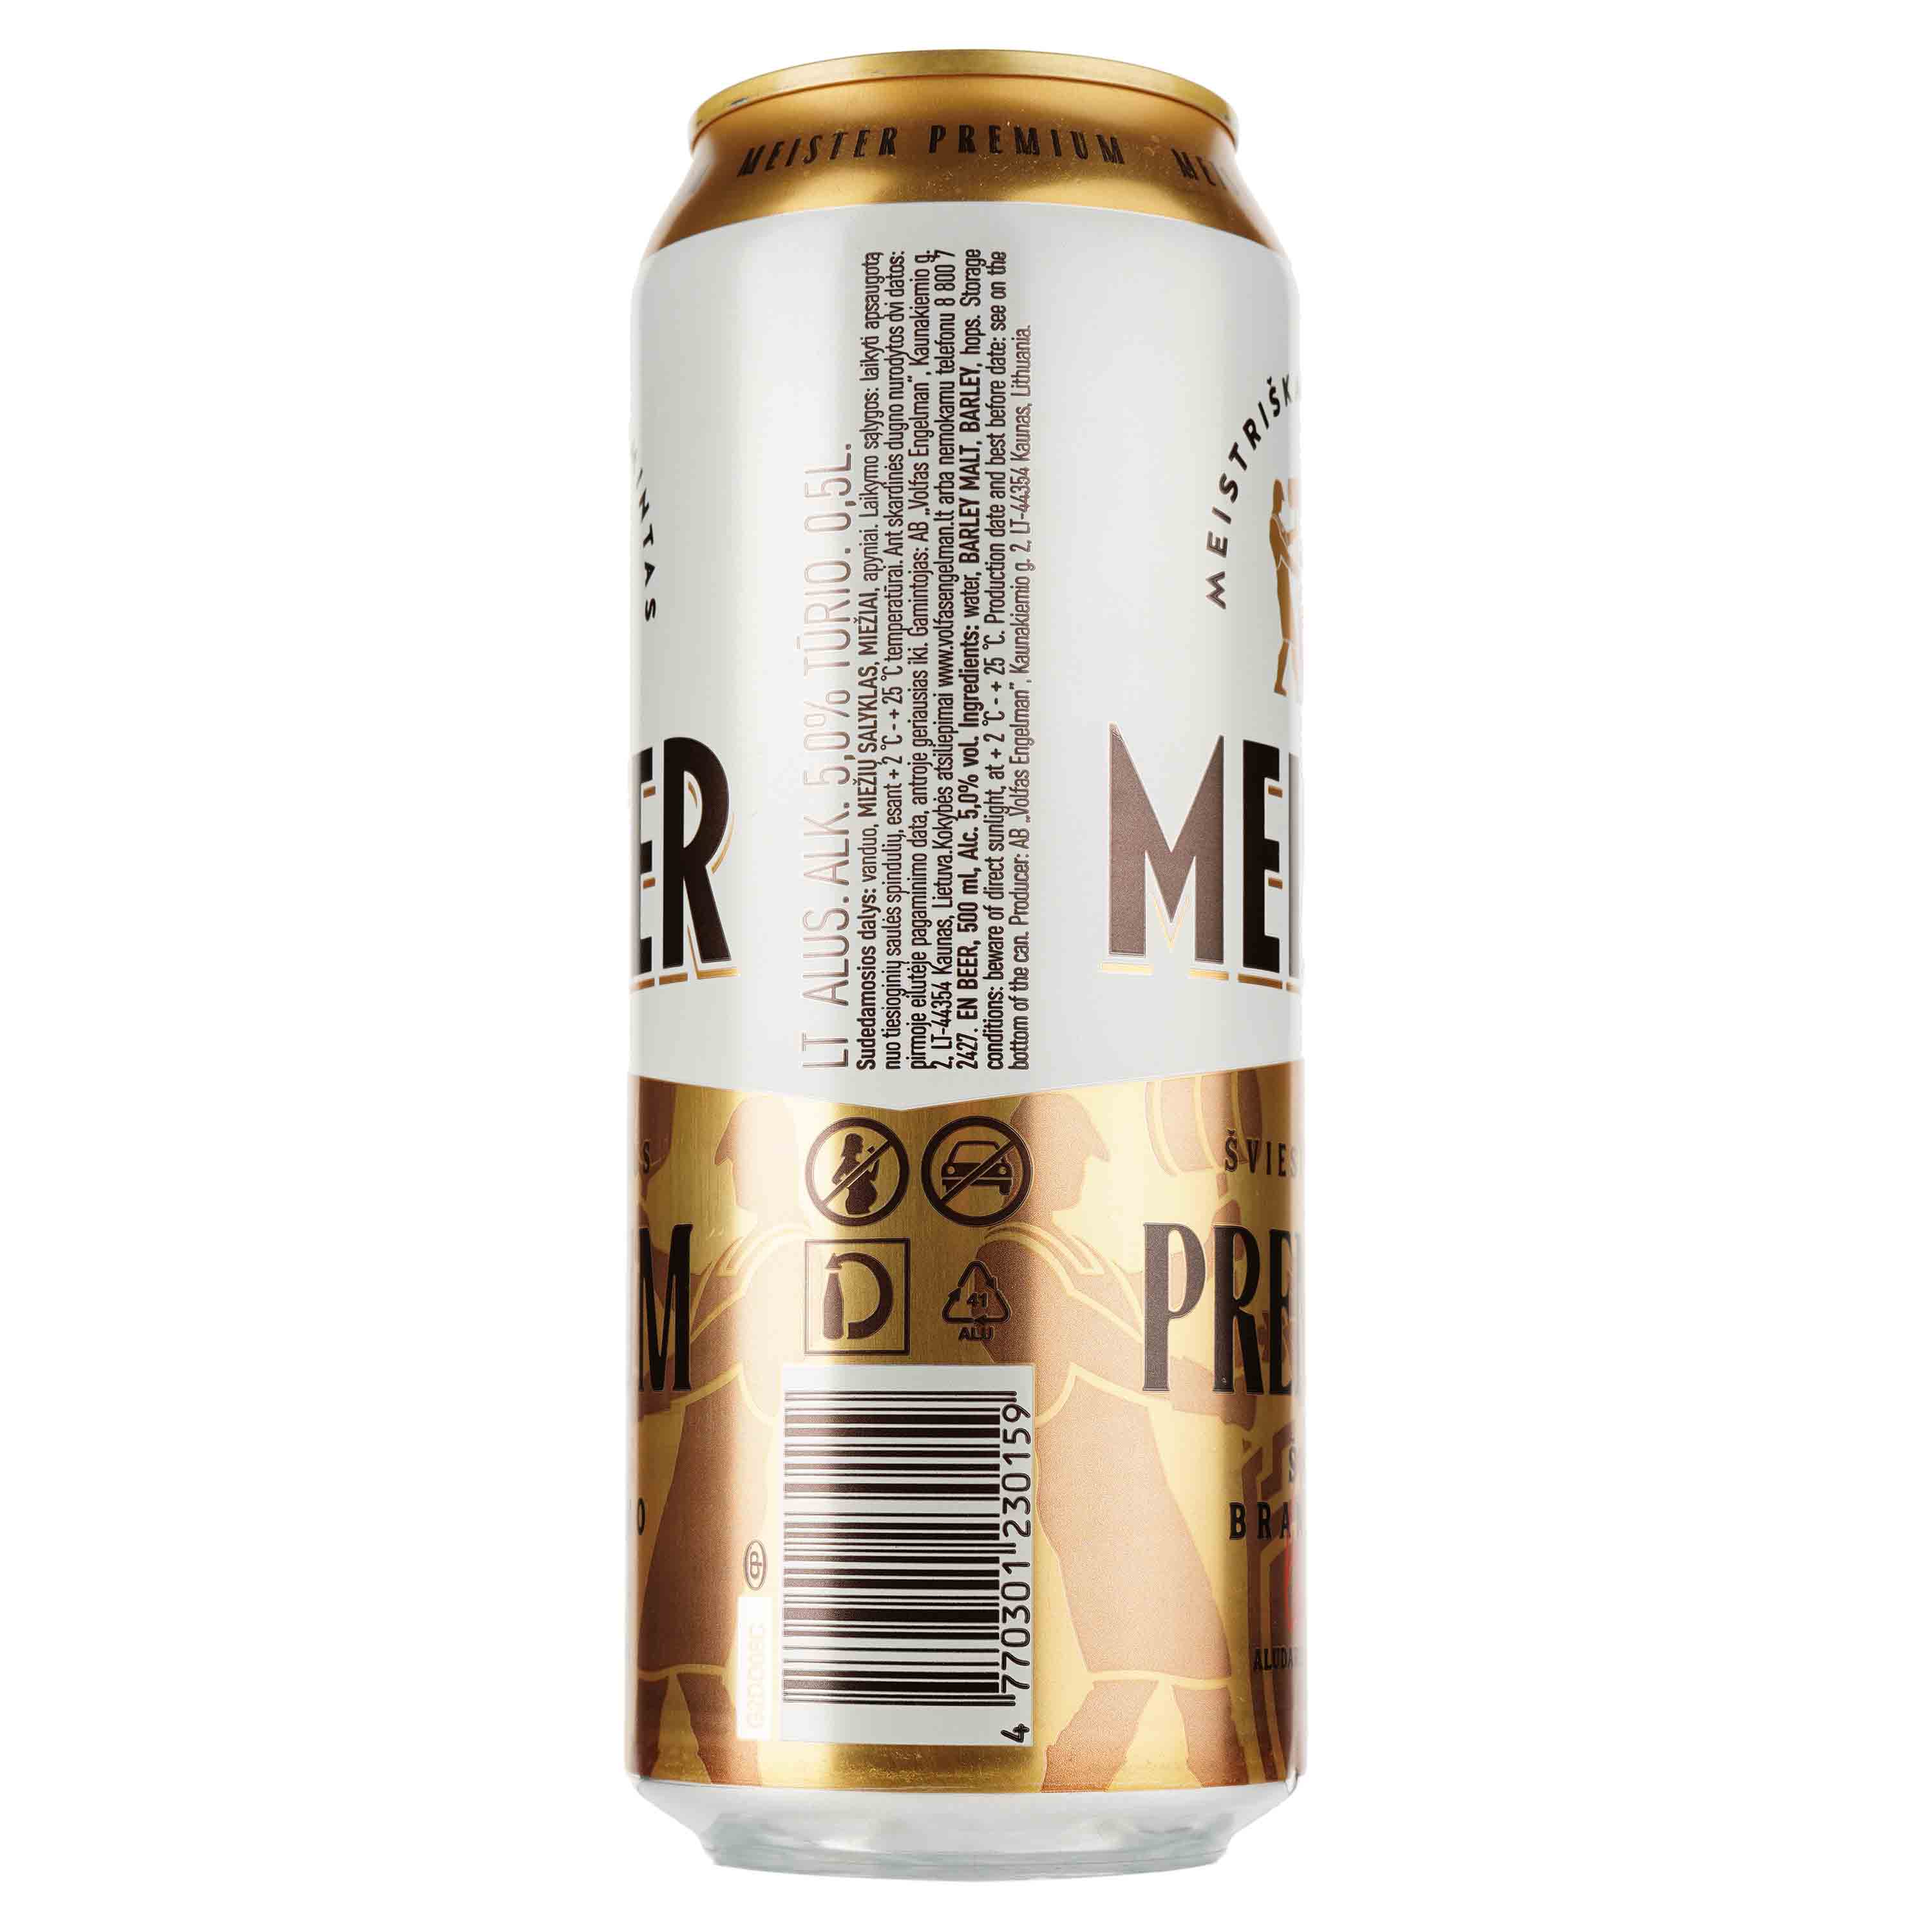 Пиво Meister Premium светлое, 5%, ж/б, 0.5 л - фото 2